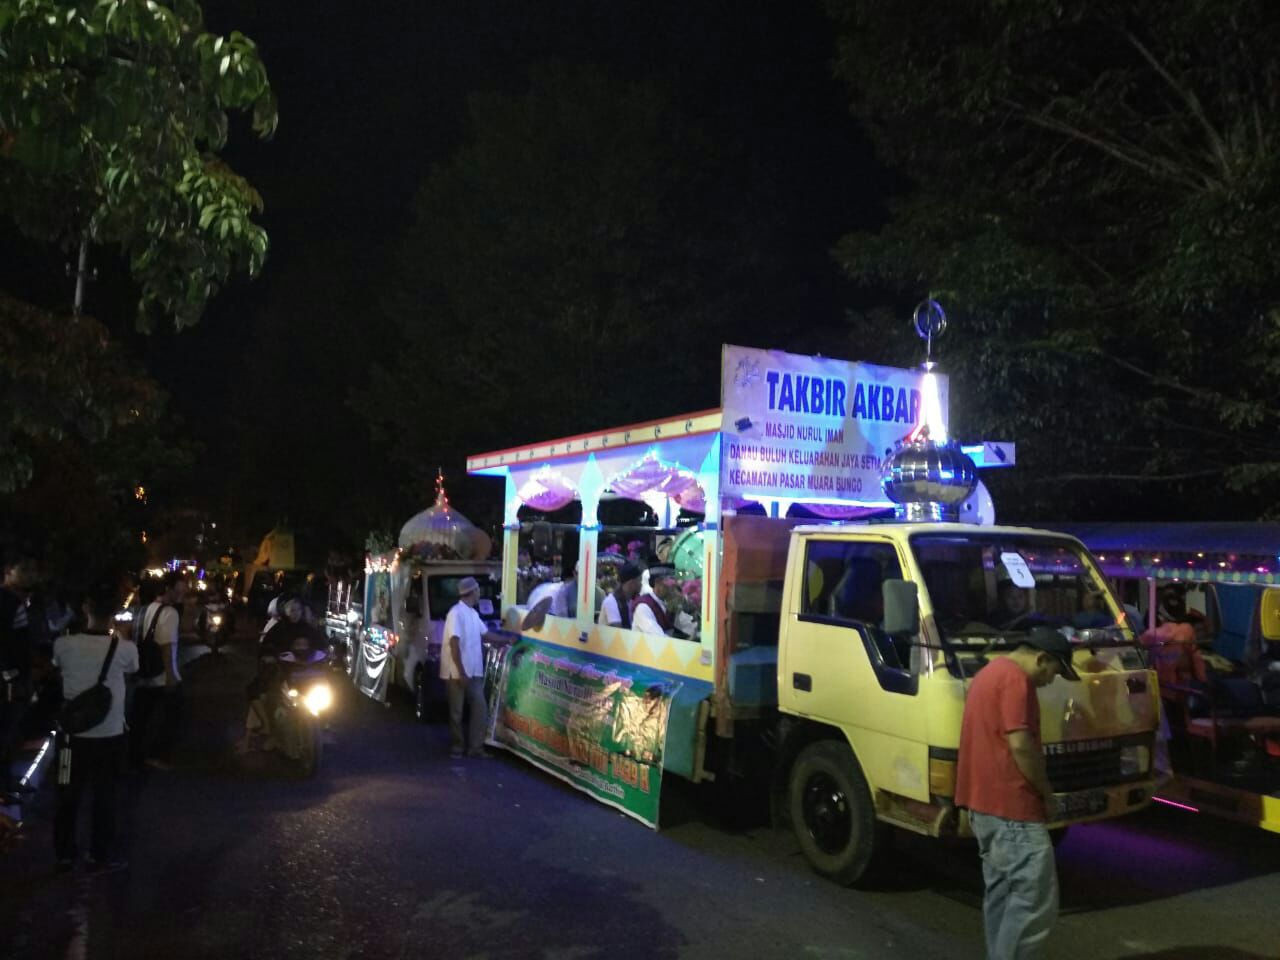 Ratusan Mobil Hias Ikuti Pawai Malam Takbiran Pemerintah Kabupaten Bungo Bungokab Go Id